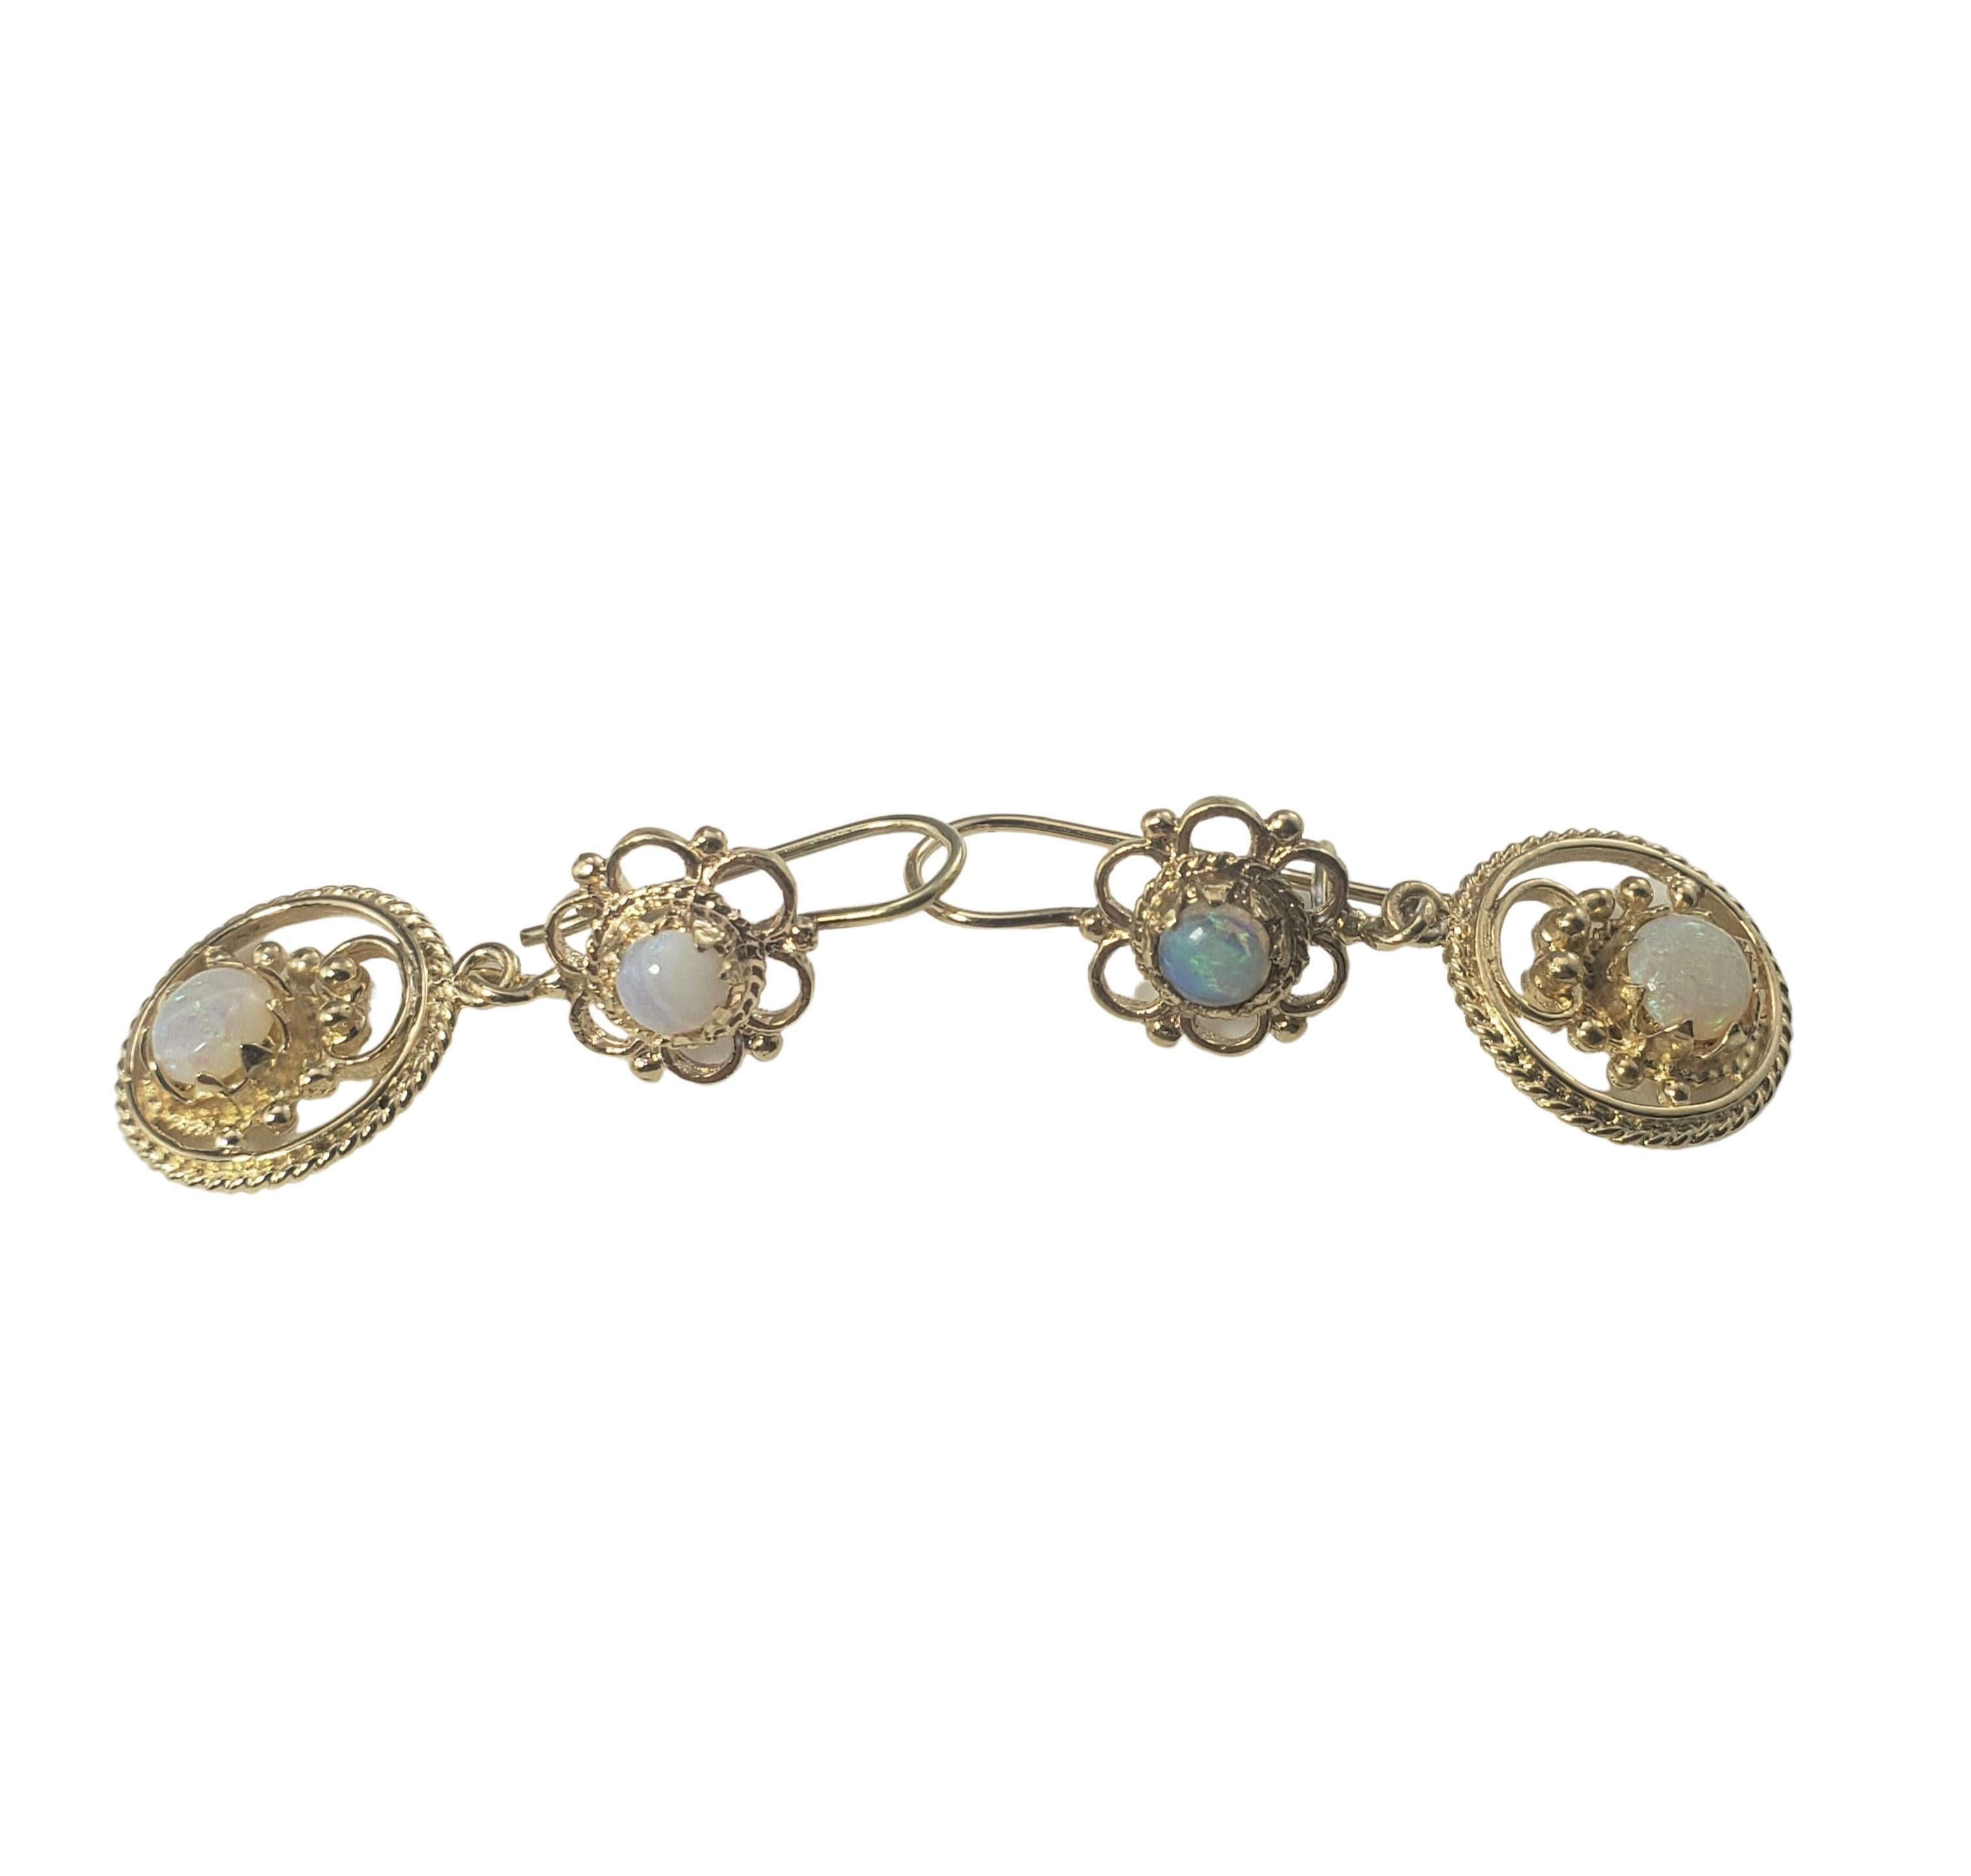 boucles d'oreilles pendantes en or jaune 14 carats et opale-

Ces élégantes boucles d'oreilles pendantes présentent chacune deux opales rondes (5 mm et 6 mm) serties dans de l'or jaune 14K magnifiquement détaillé.

Taille : 27 mm x 13 mm

Poids : 